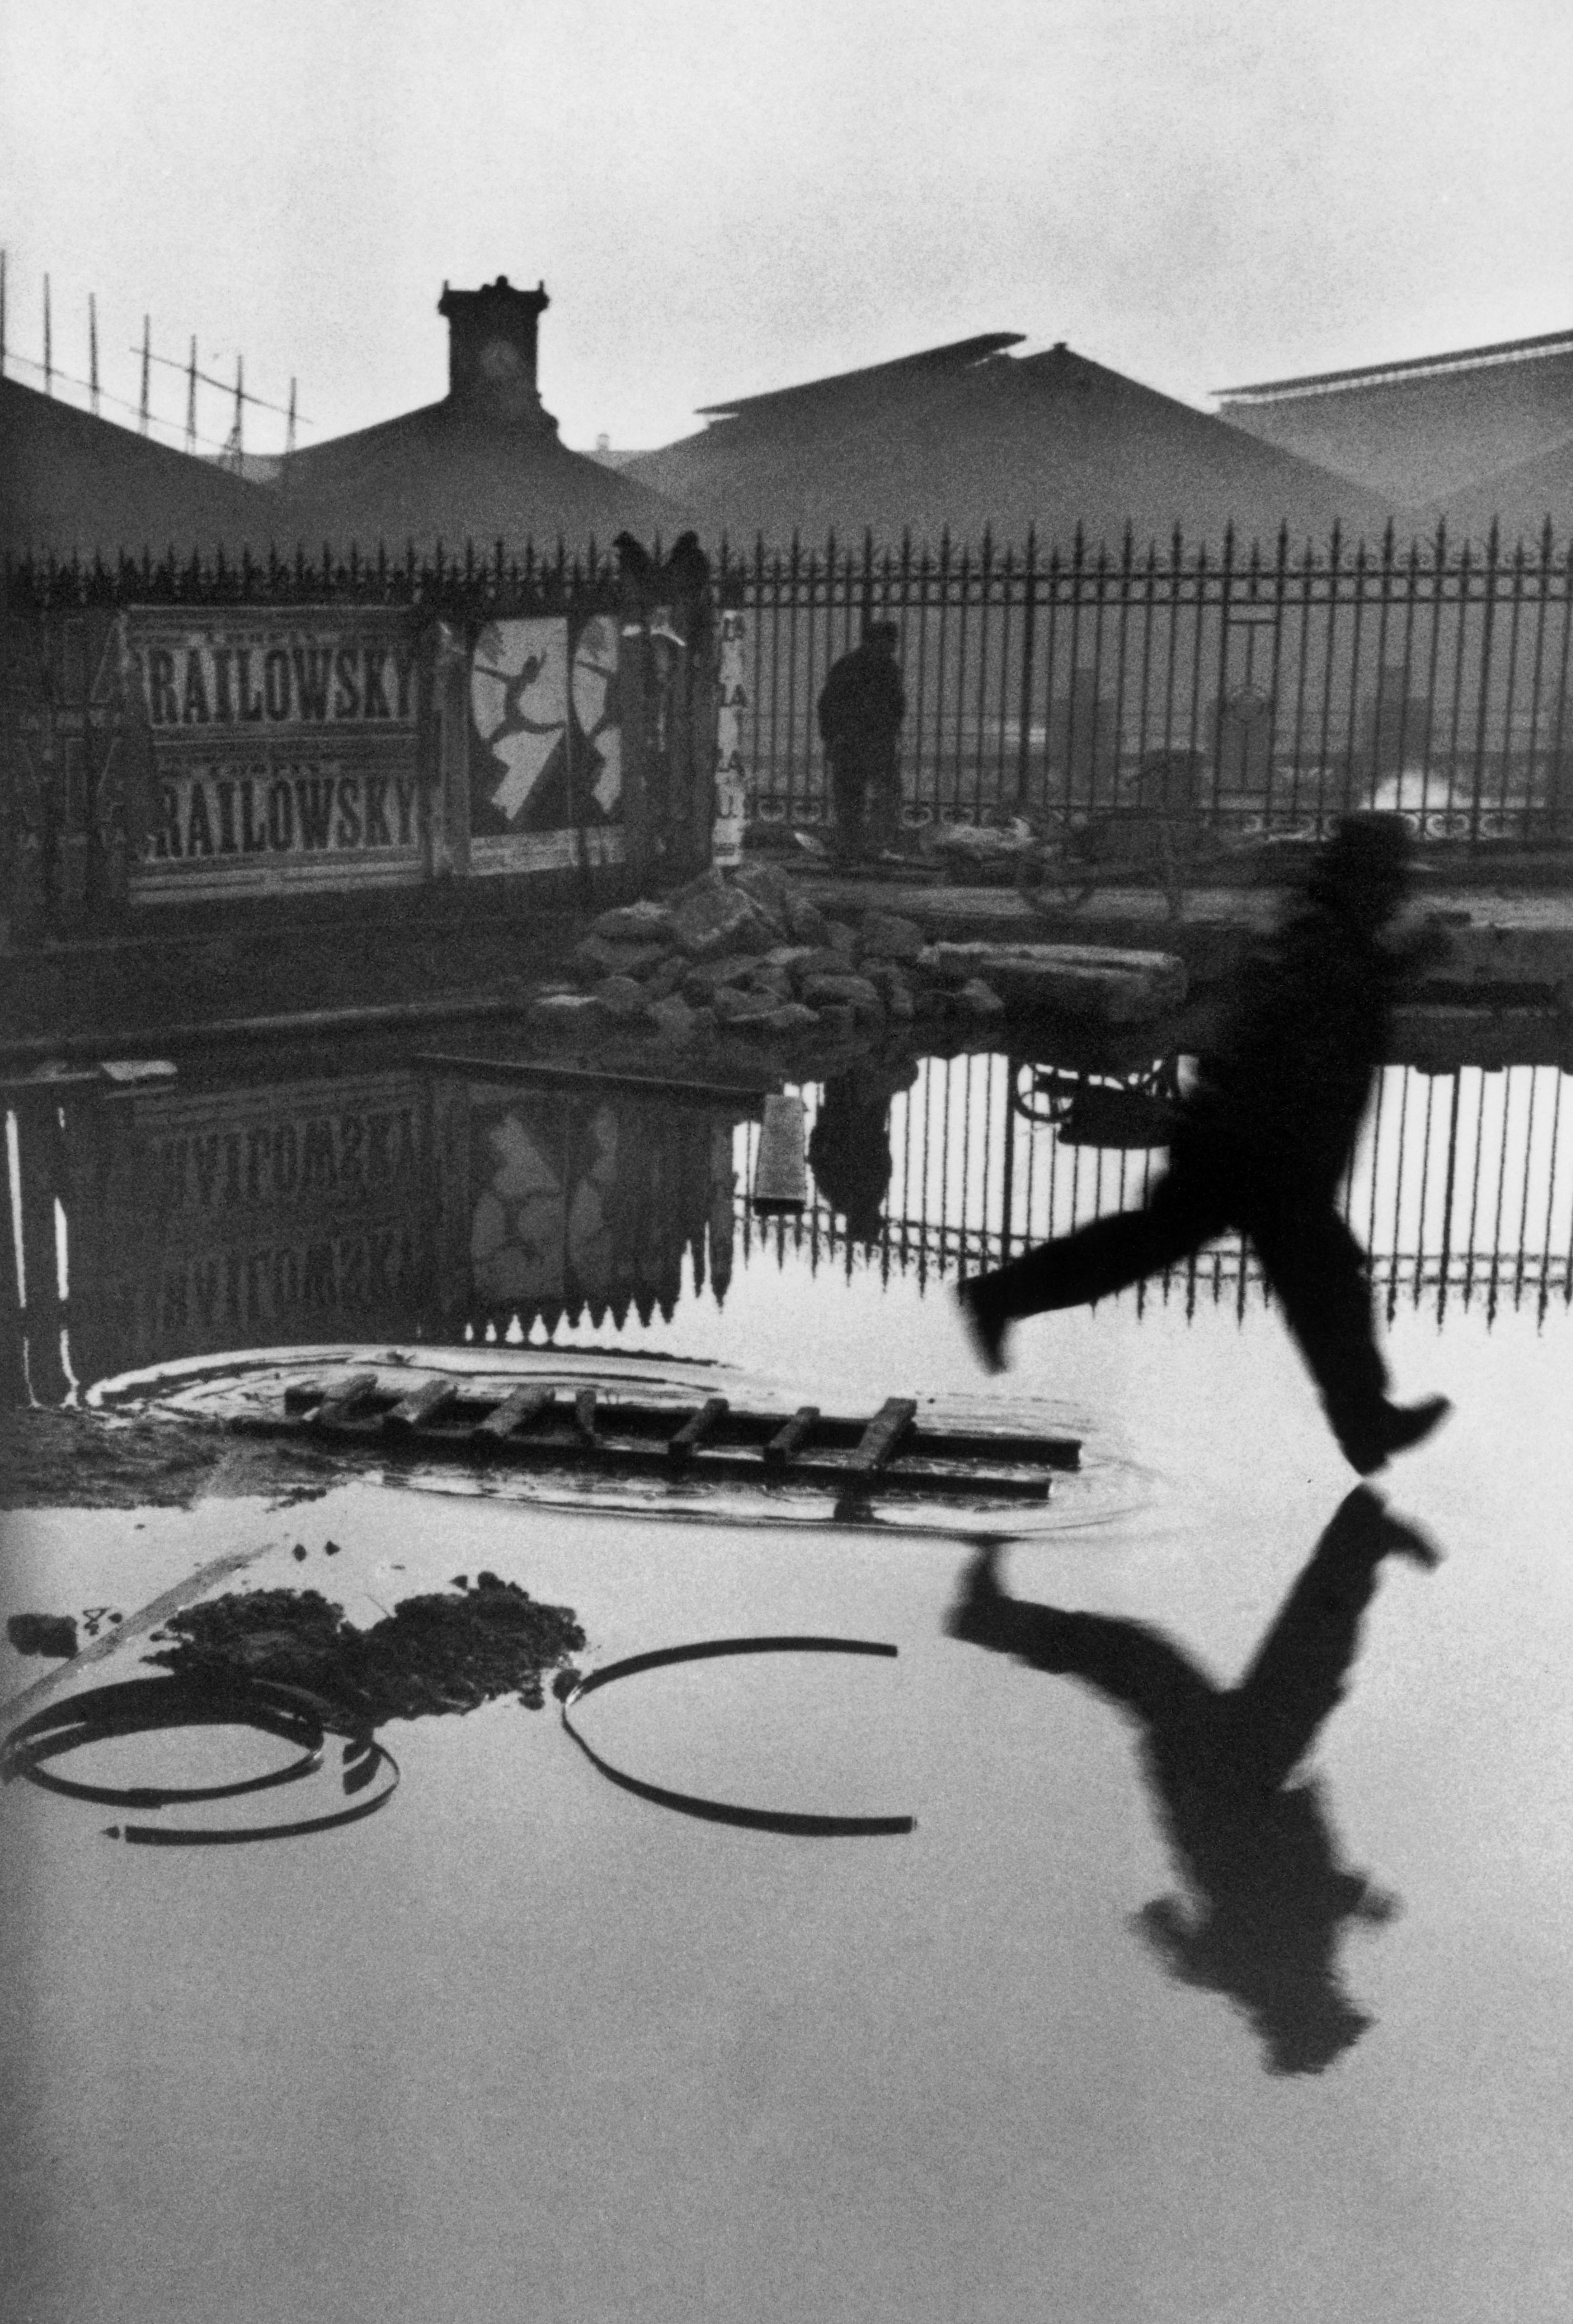 サンラザール駅裏 パリ フランス 1932 年 アンリ・カルティエ＝ブレッソン (c)Henri Cartier-Bresson Magnum Photos